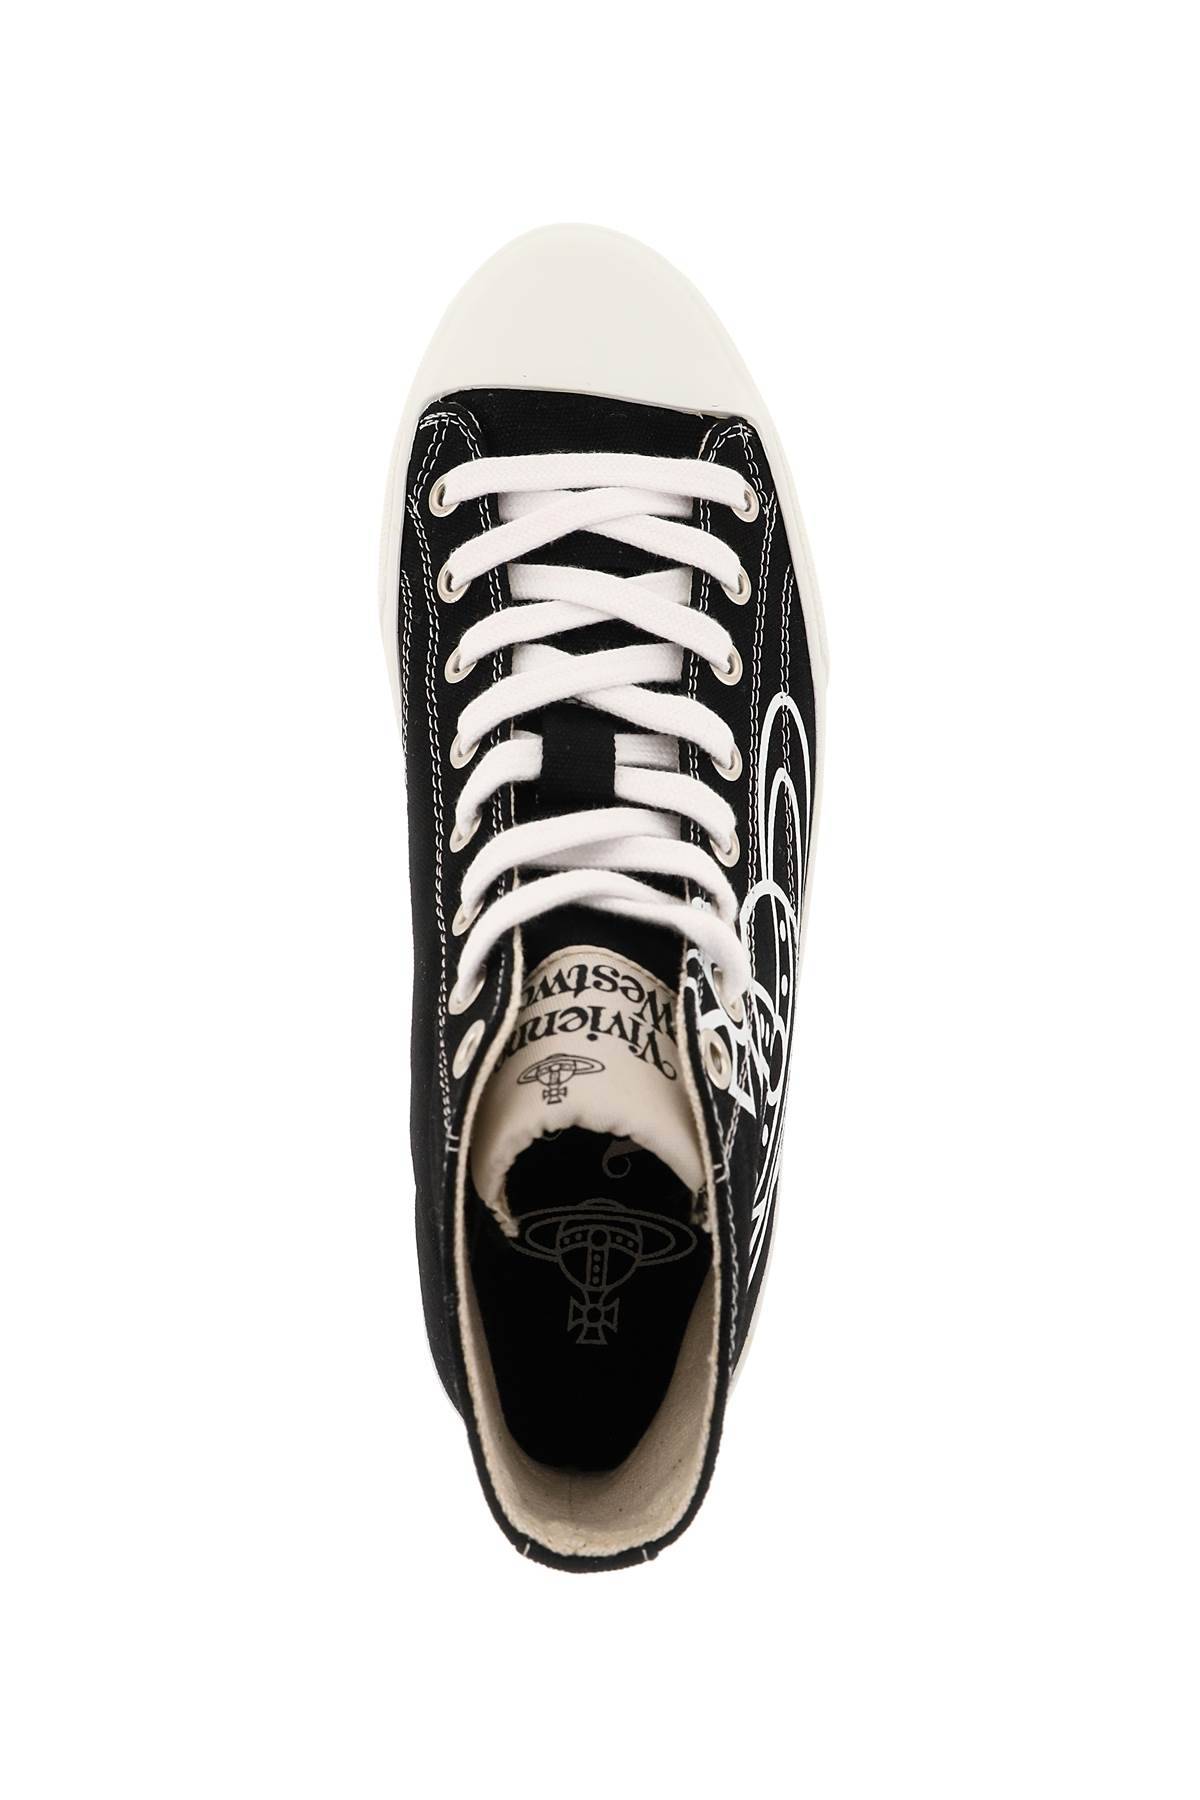 Shop Vivienne Westwood Plimsoll High Top Sneakers In Black